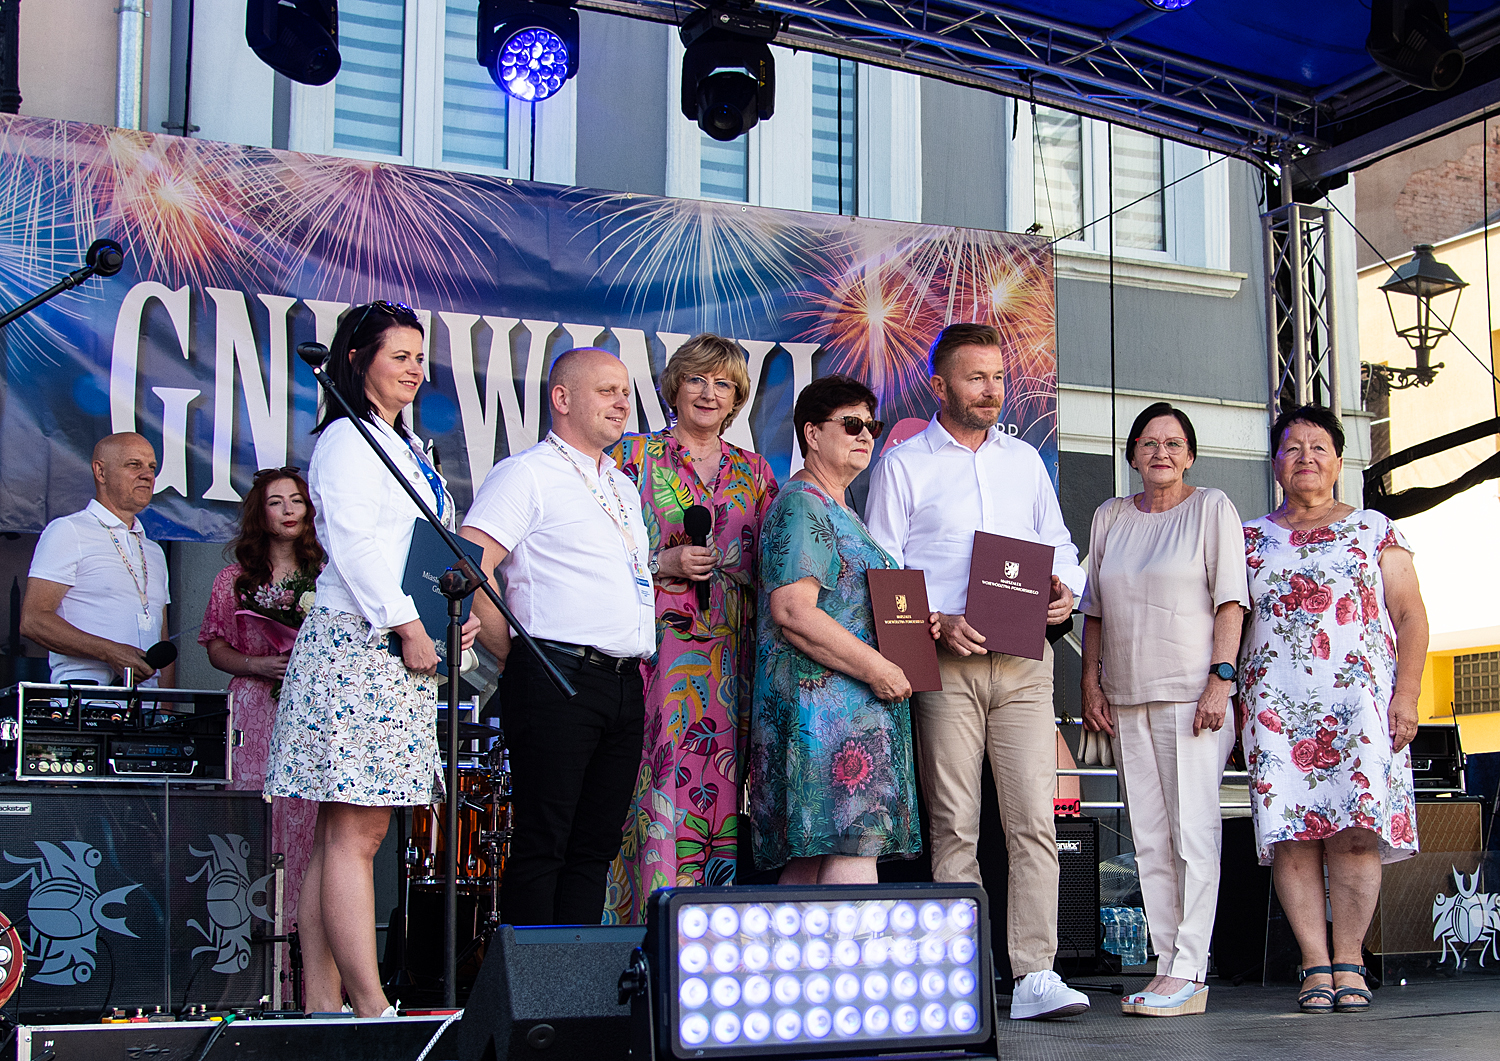 Nagrodzono laureatów Konkursu Pomorskie dla Seniorów w powiecie tczewskim w kategoriach Przyjaciółka Seniorów oraz Pracodawca przyjazny Seniorom